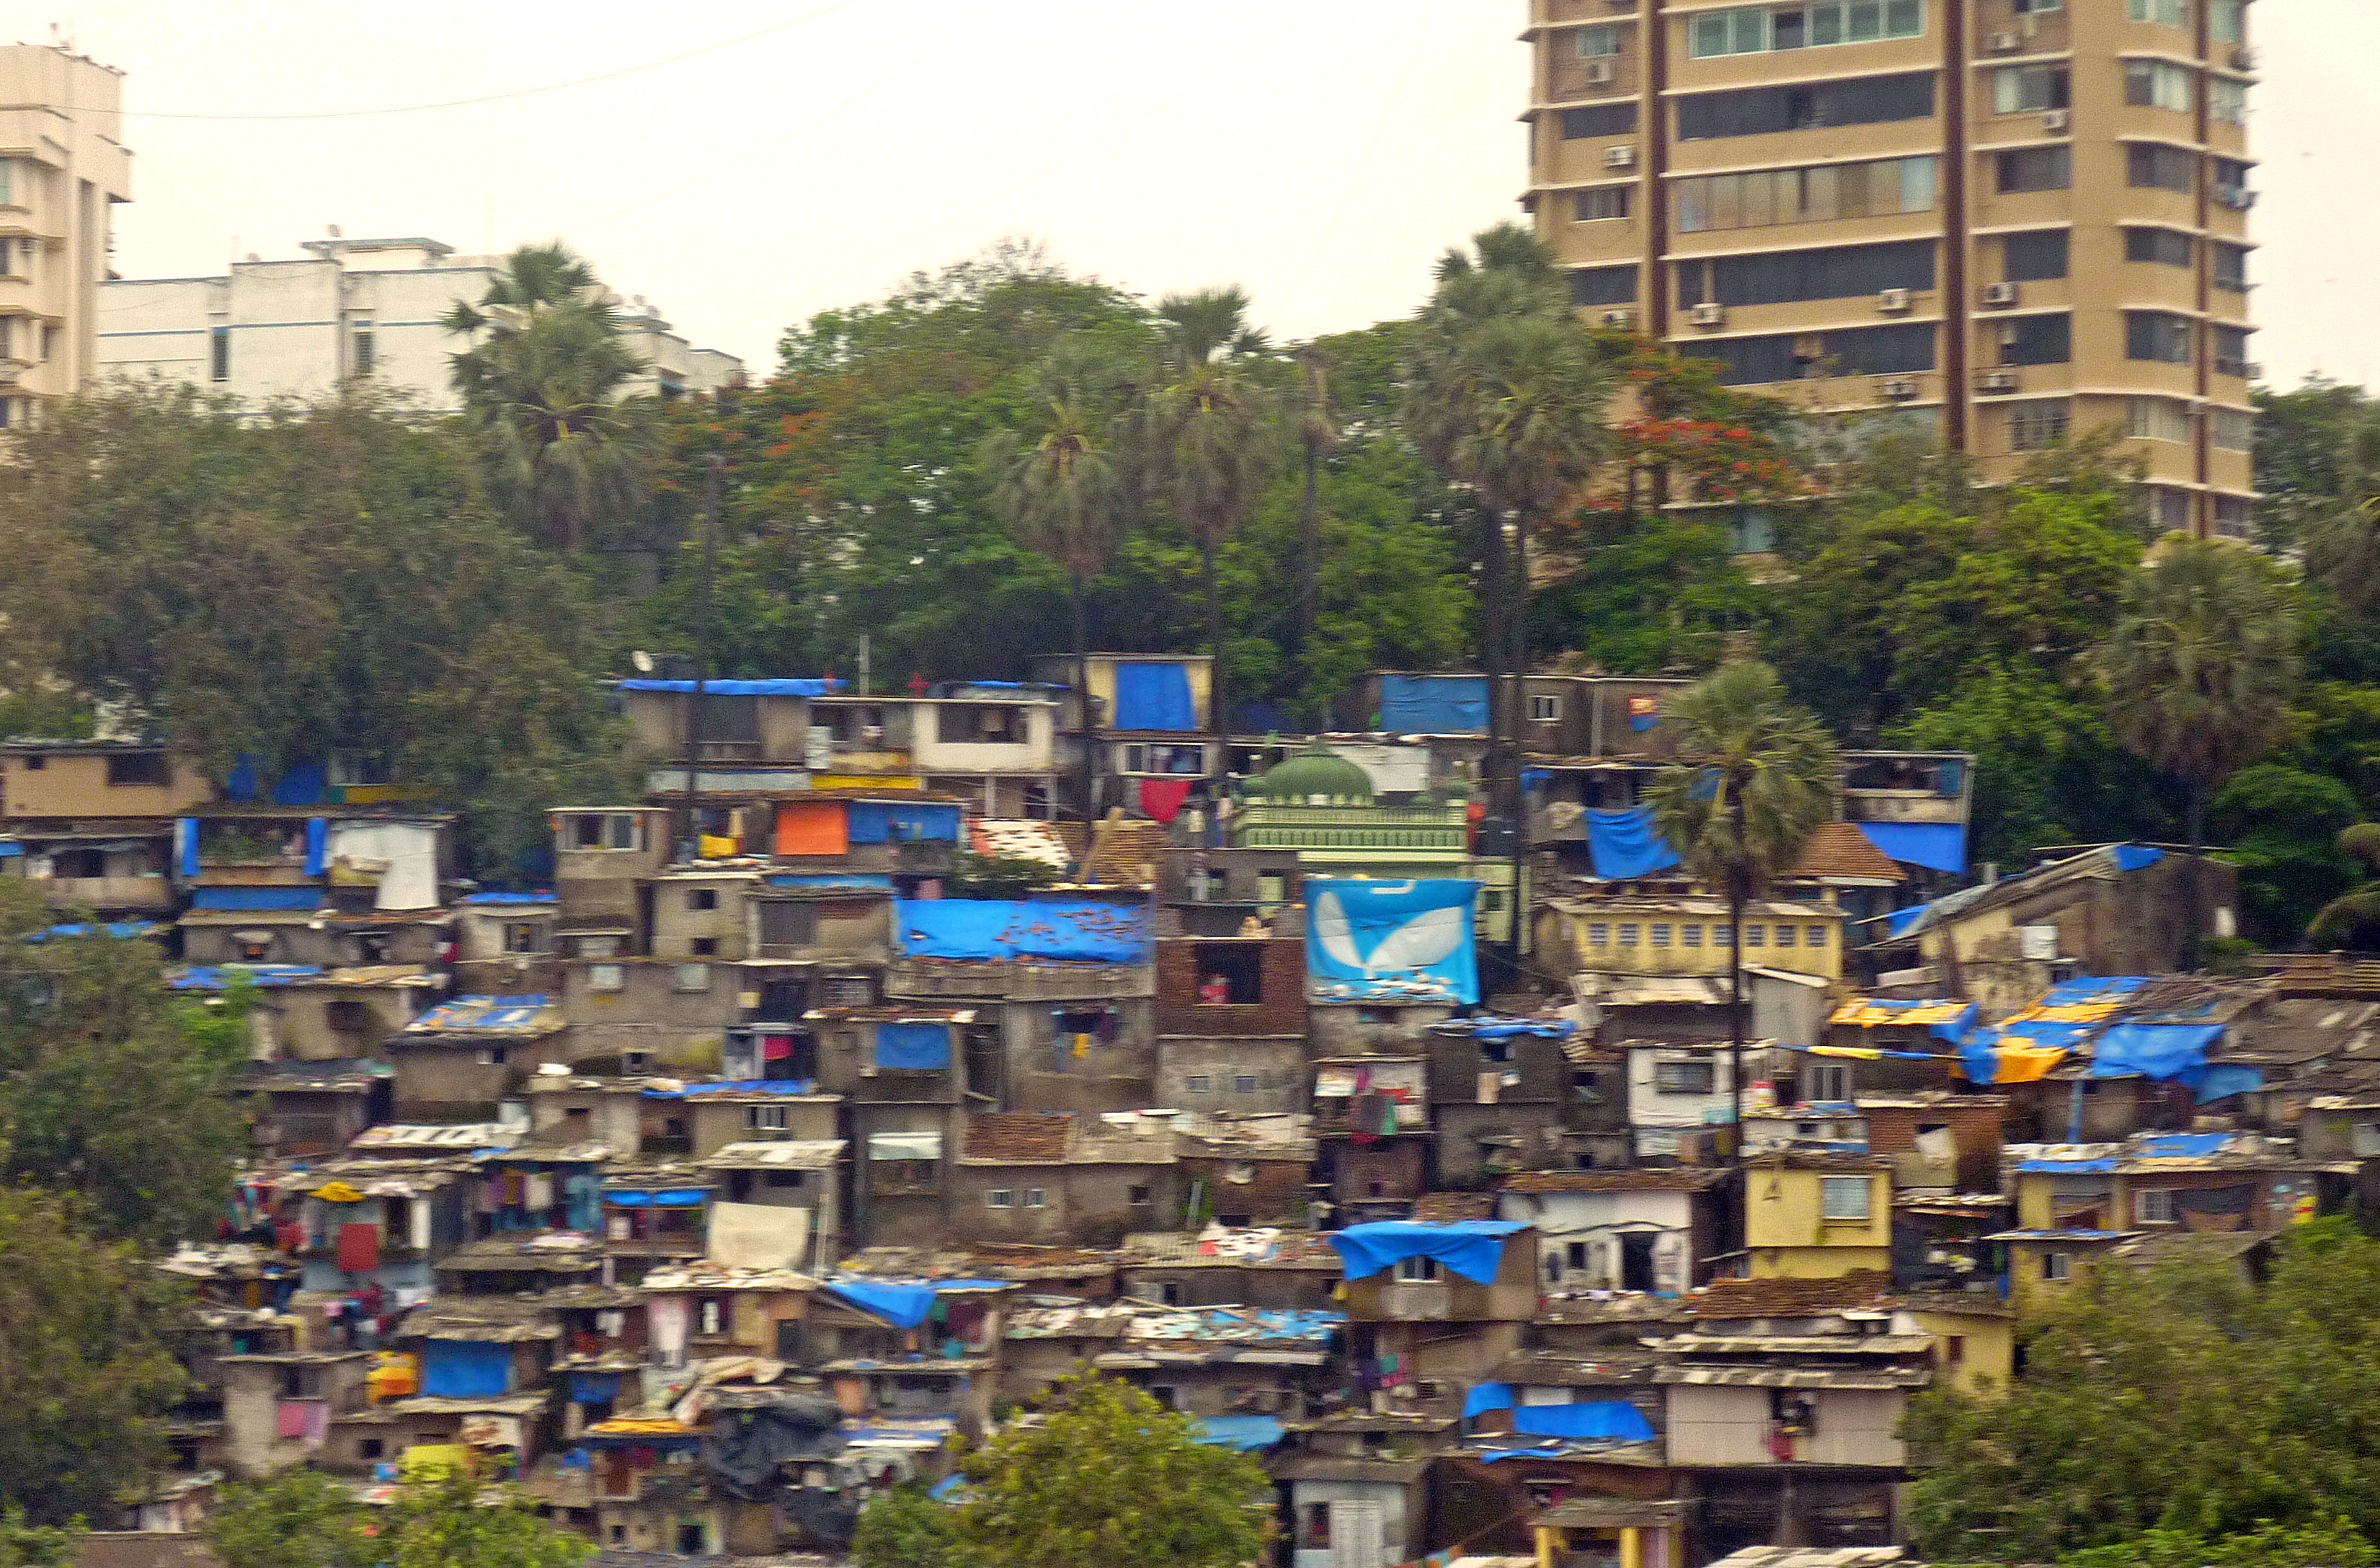 p1050733-mumbai-india-slum-area-one-of-largest-near-airport.jpg